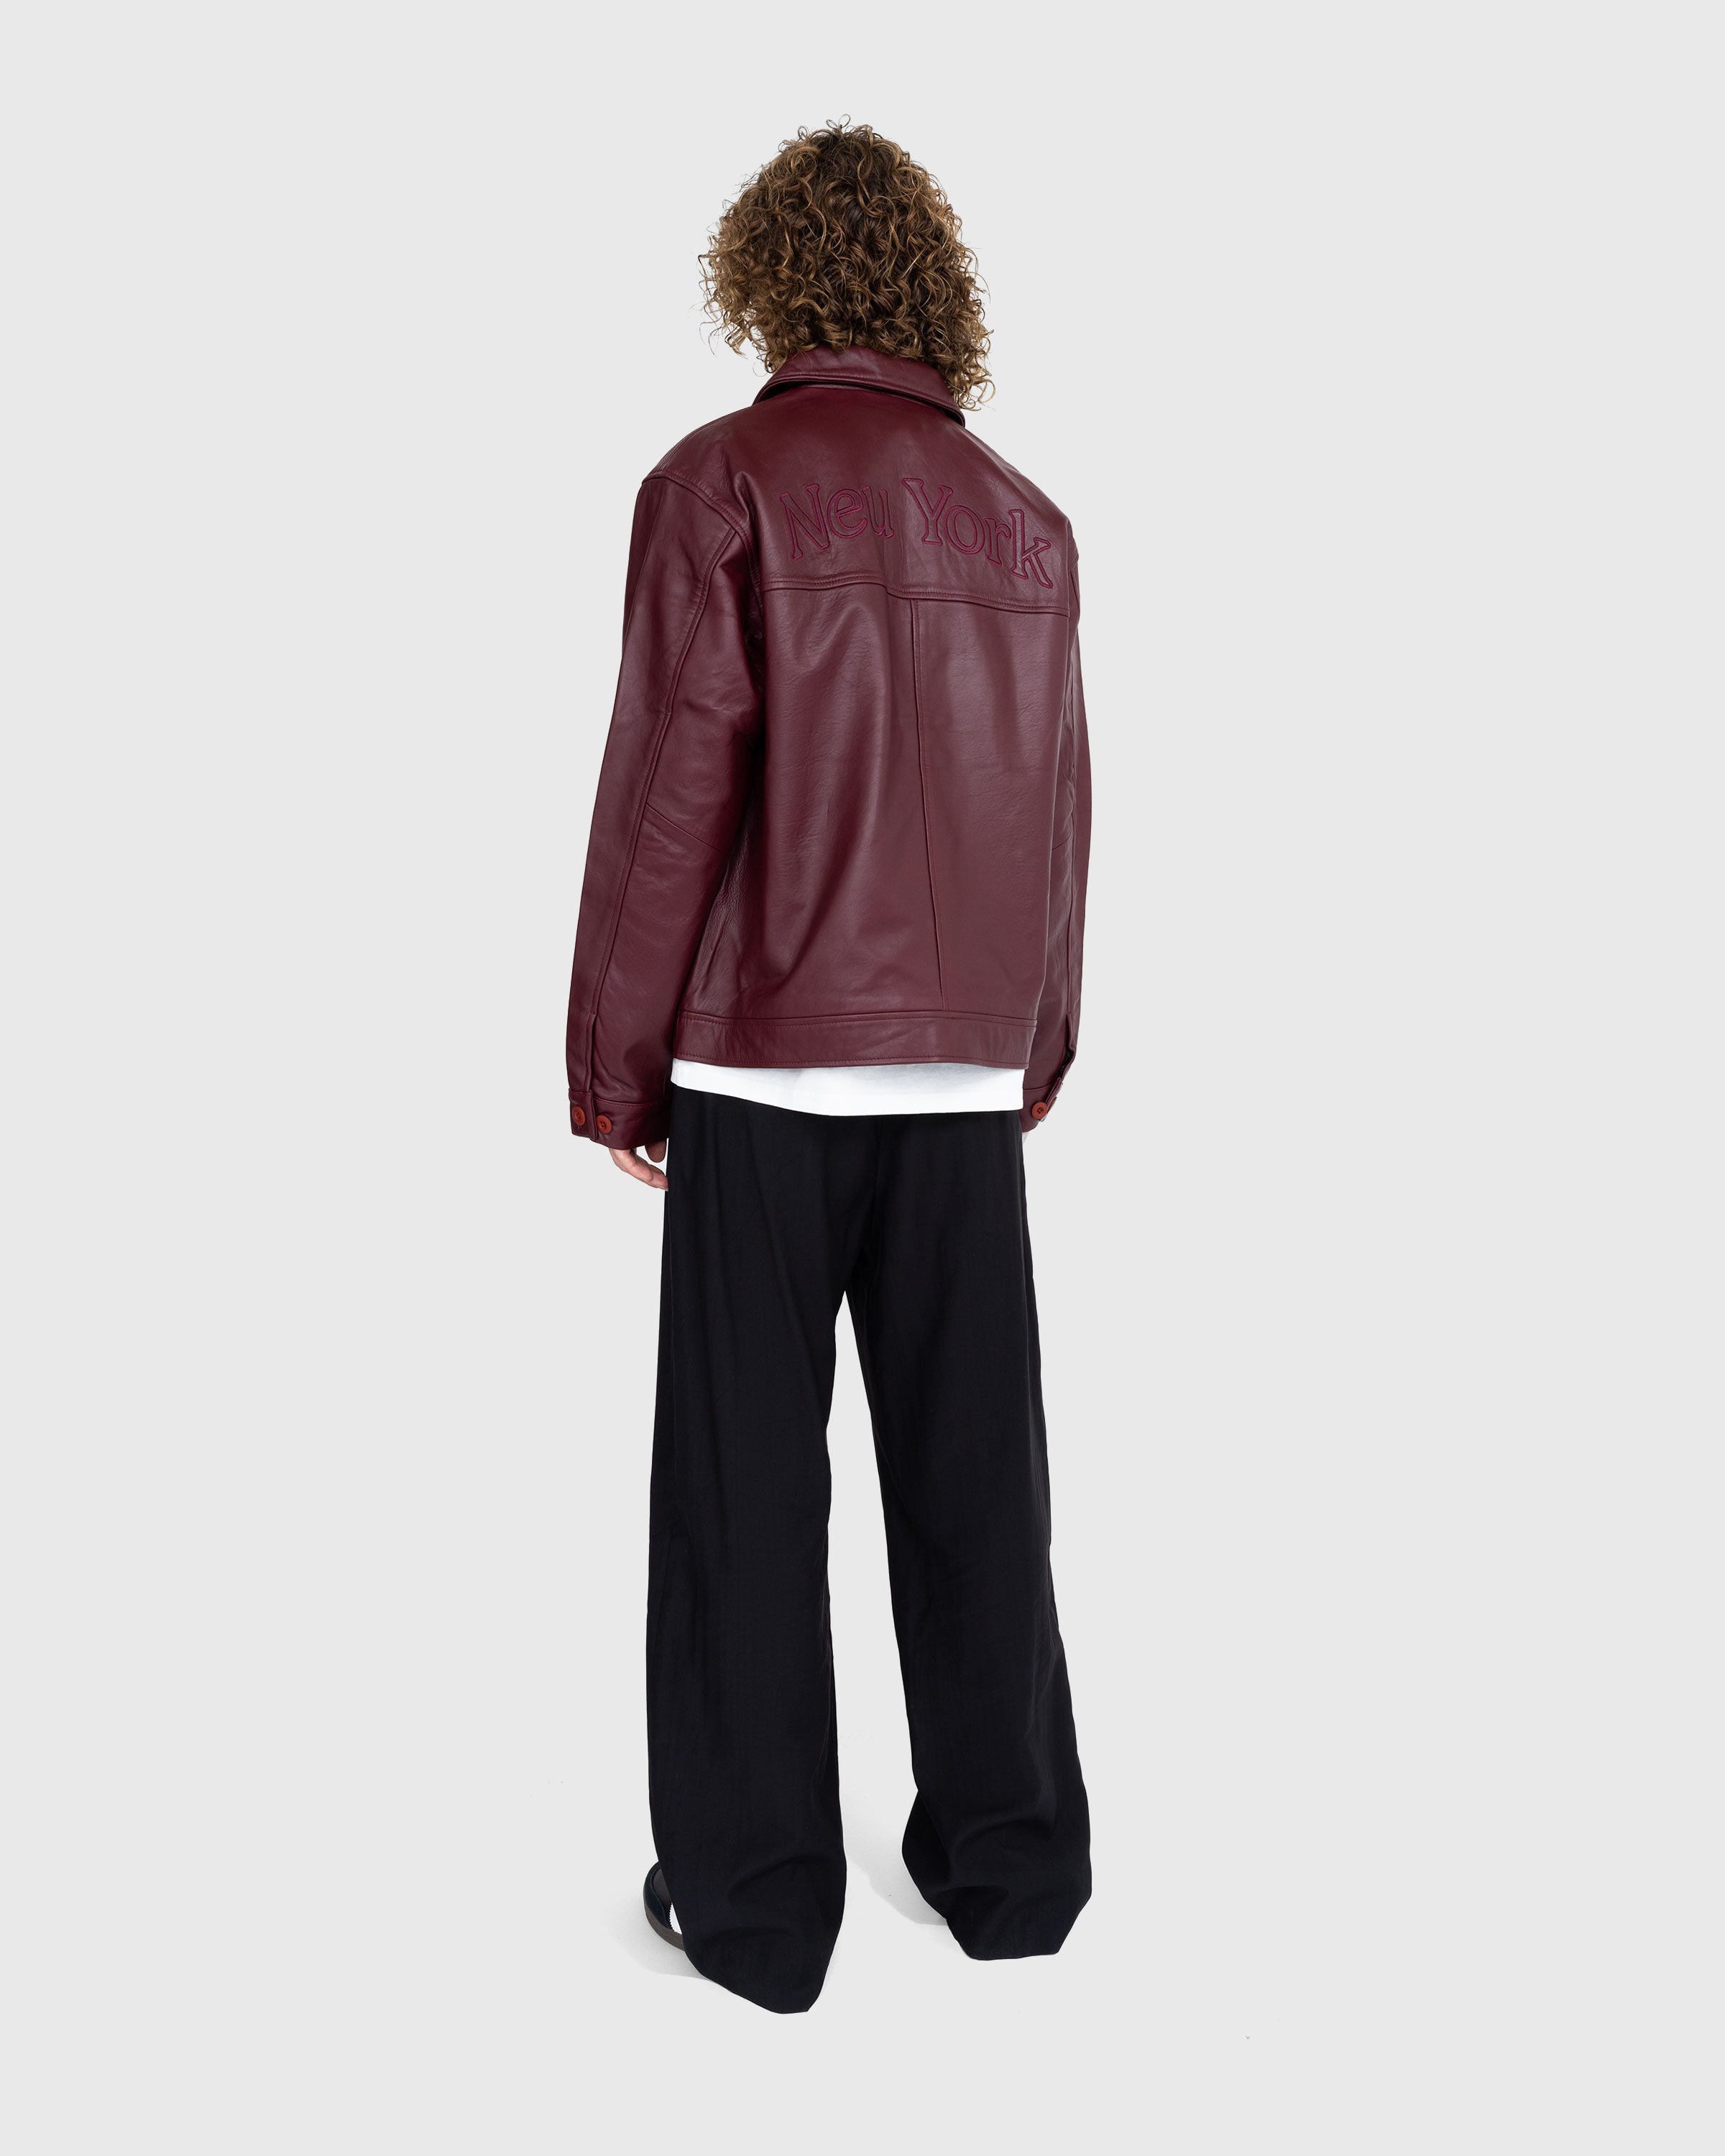 Highsnobiety - Neu York Leather Jacket Burgundy - Clothing - Red - Image 4